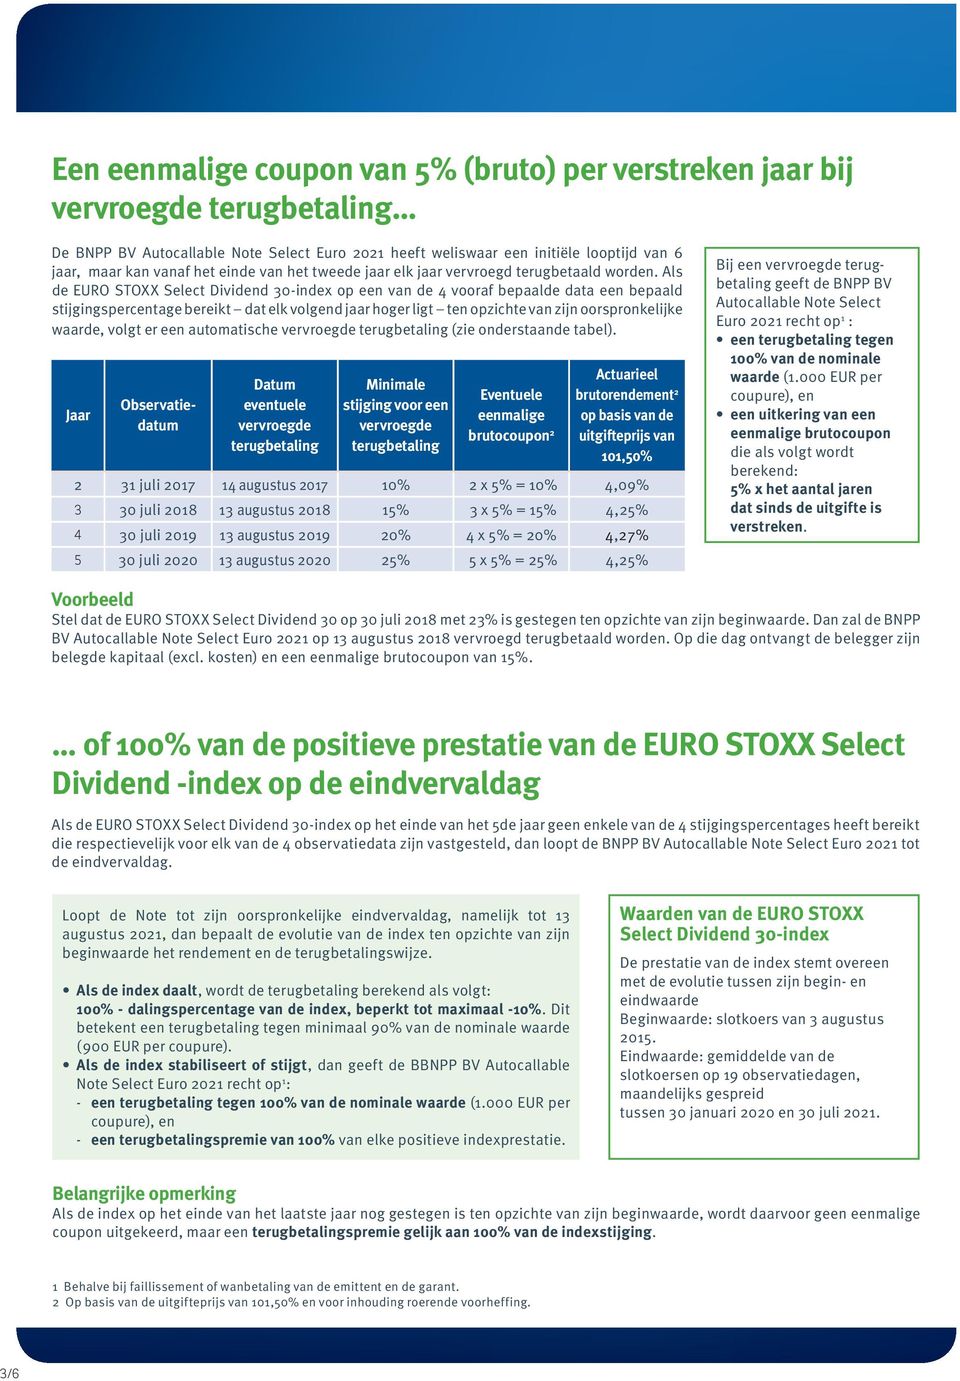 Als de EURO STOXX Select Dividend 30-index op een van de 4 vooraf bepaalde data een bepaald stijgingspercentage bereikt dat elk volgend jaar hoger ligt ten opzichte van zijn oorspronkelijke waarde,